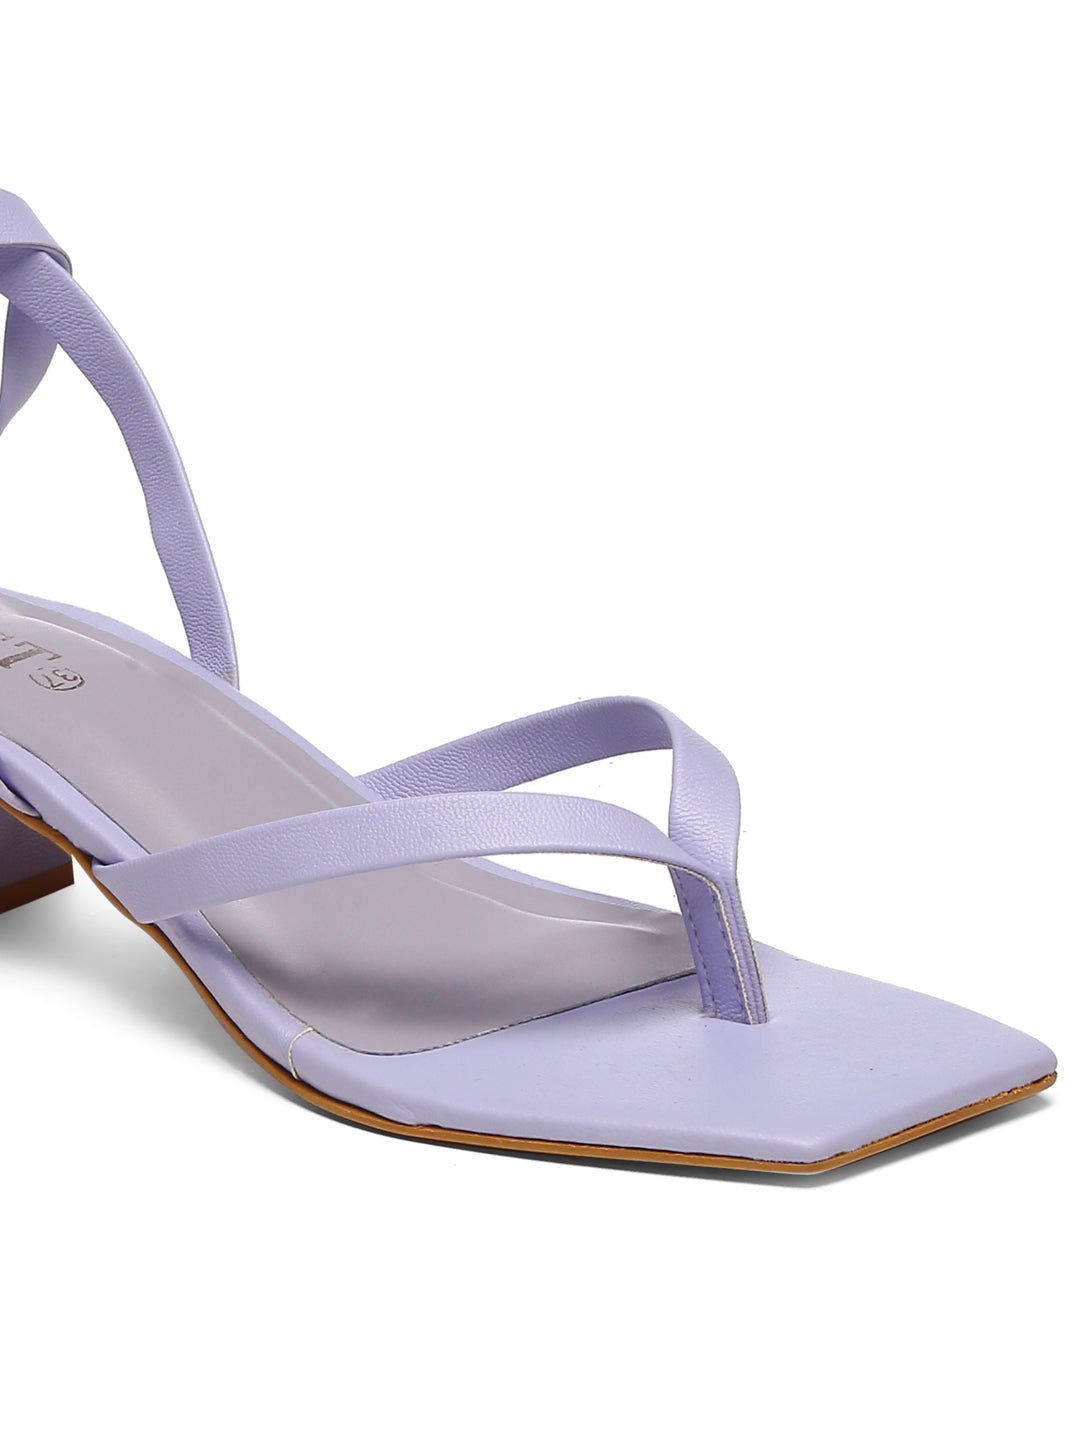 GNIST Lavender Trendy Tie up Block Heel Sandal